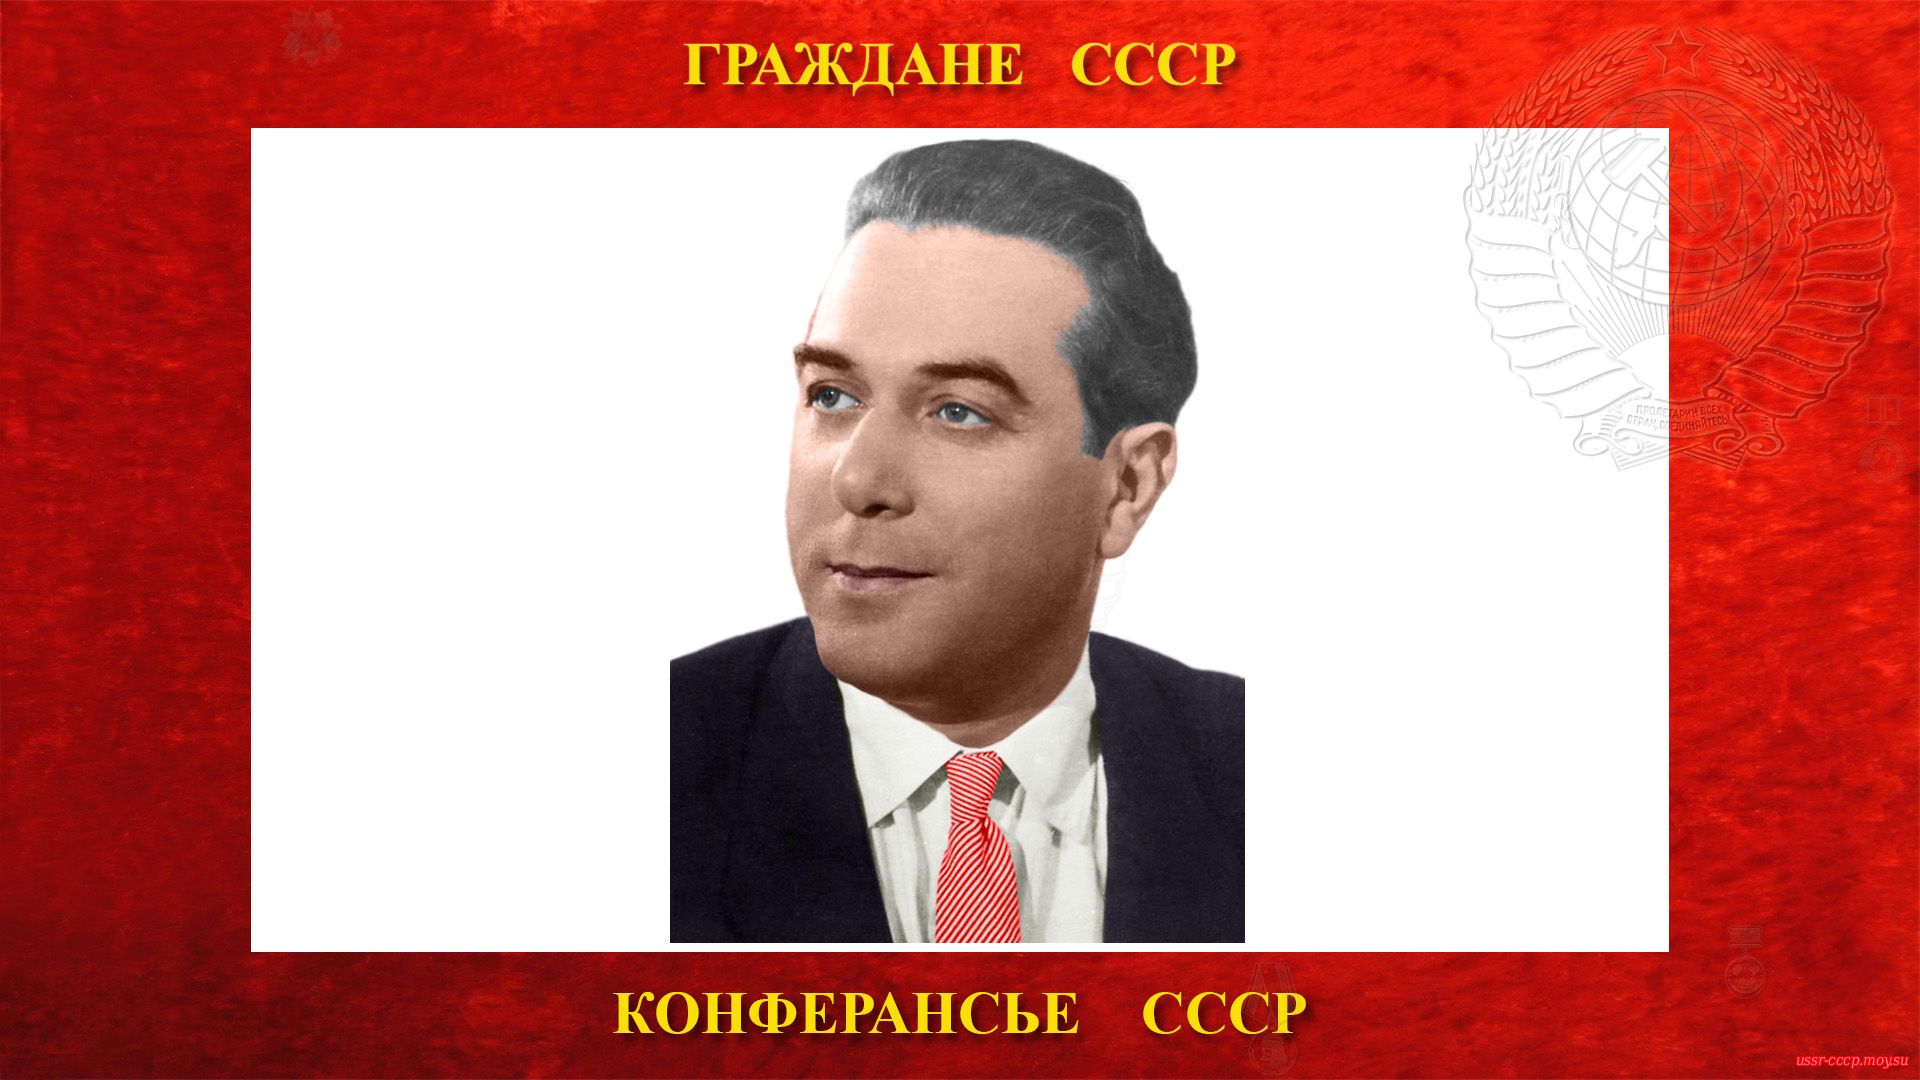 Новицкий Марк Владимирович (Брук)  — Советский конферансье